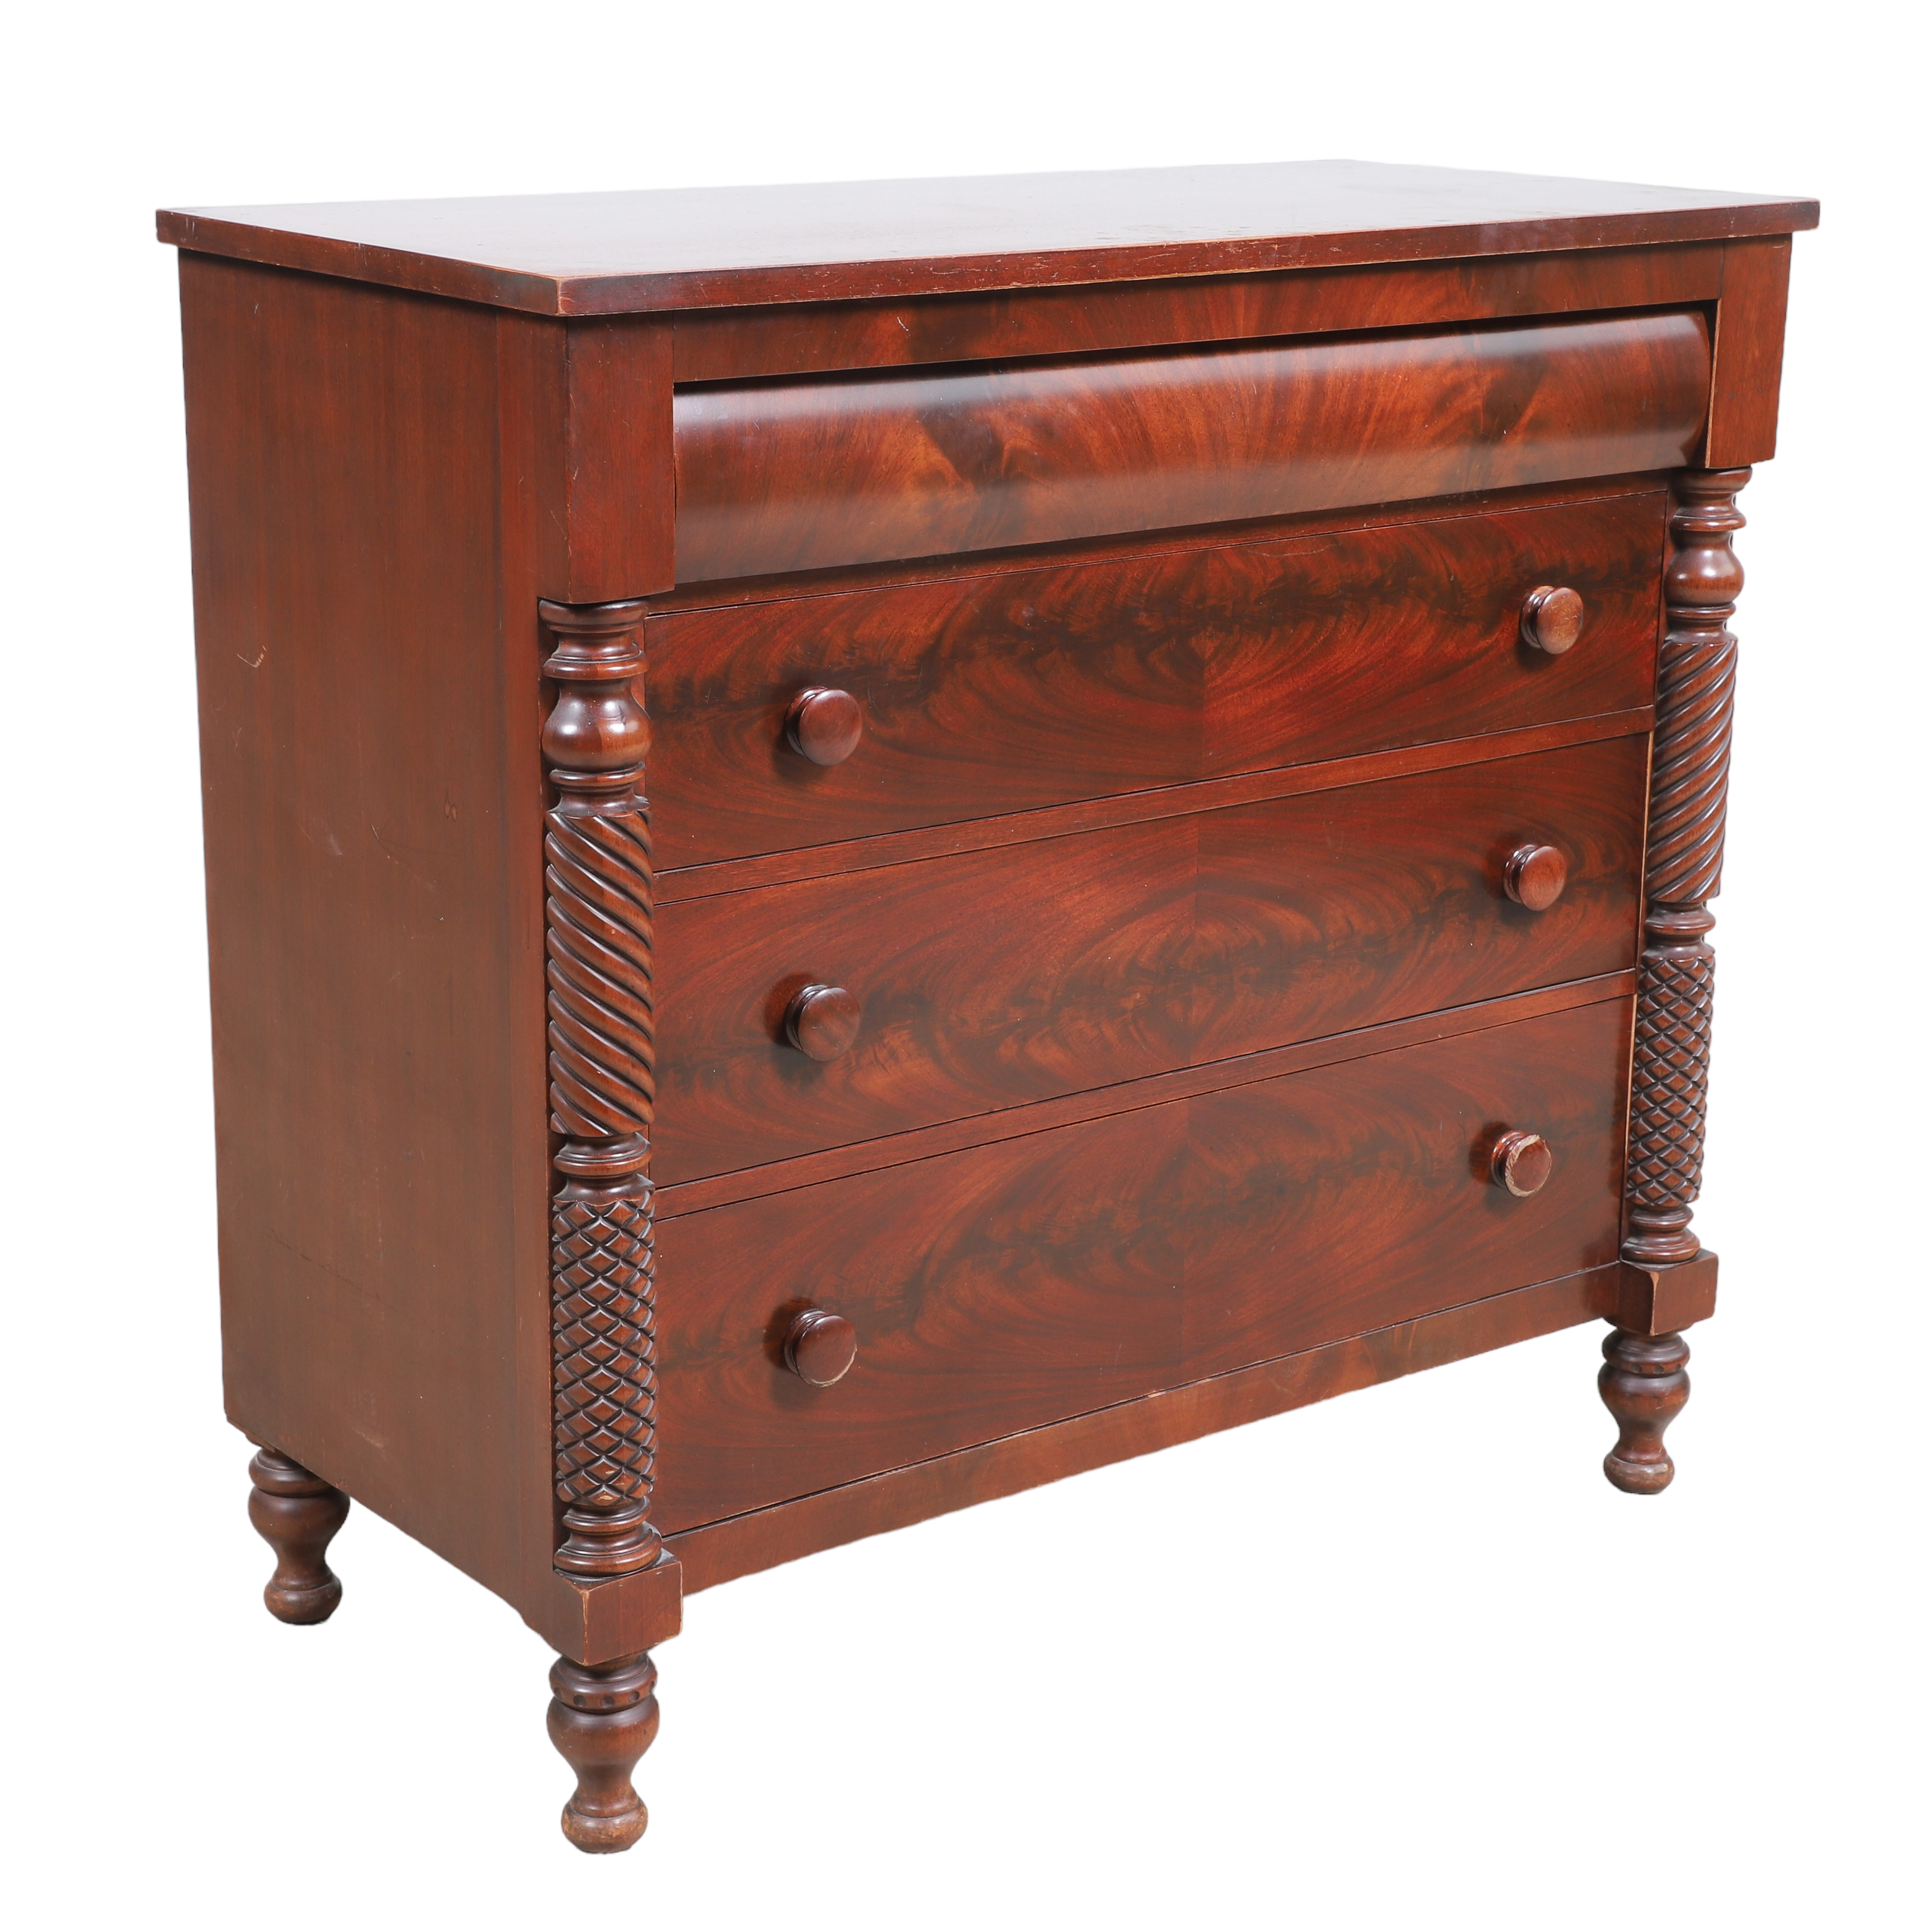 Empire style mahogany chest of